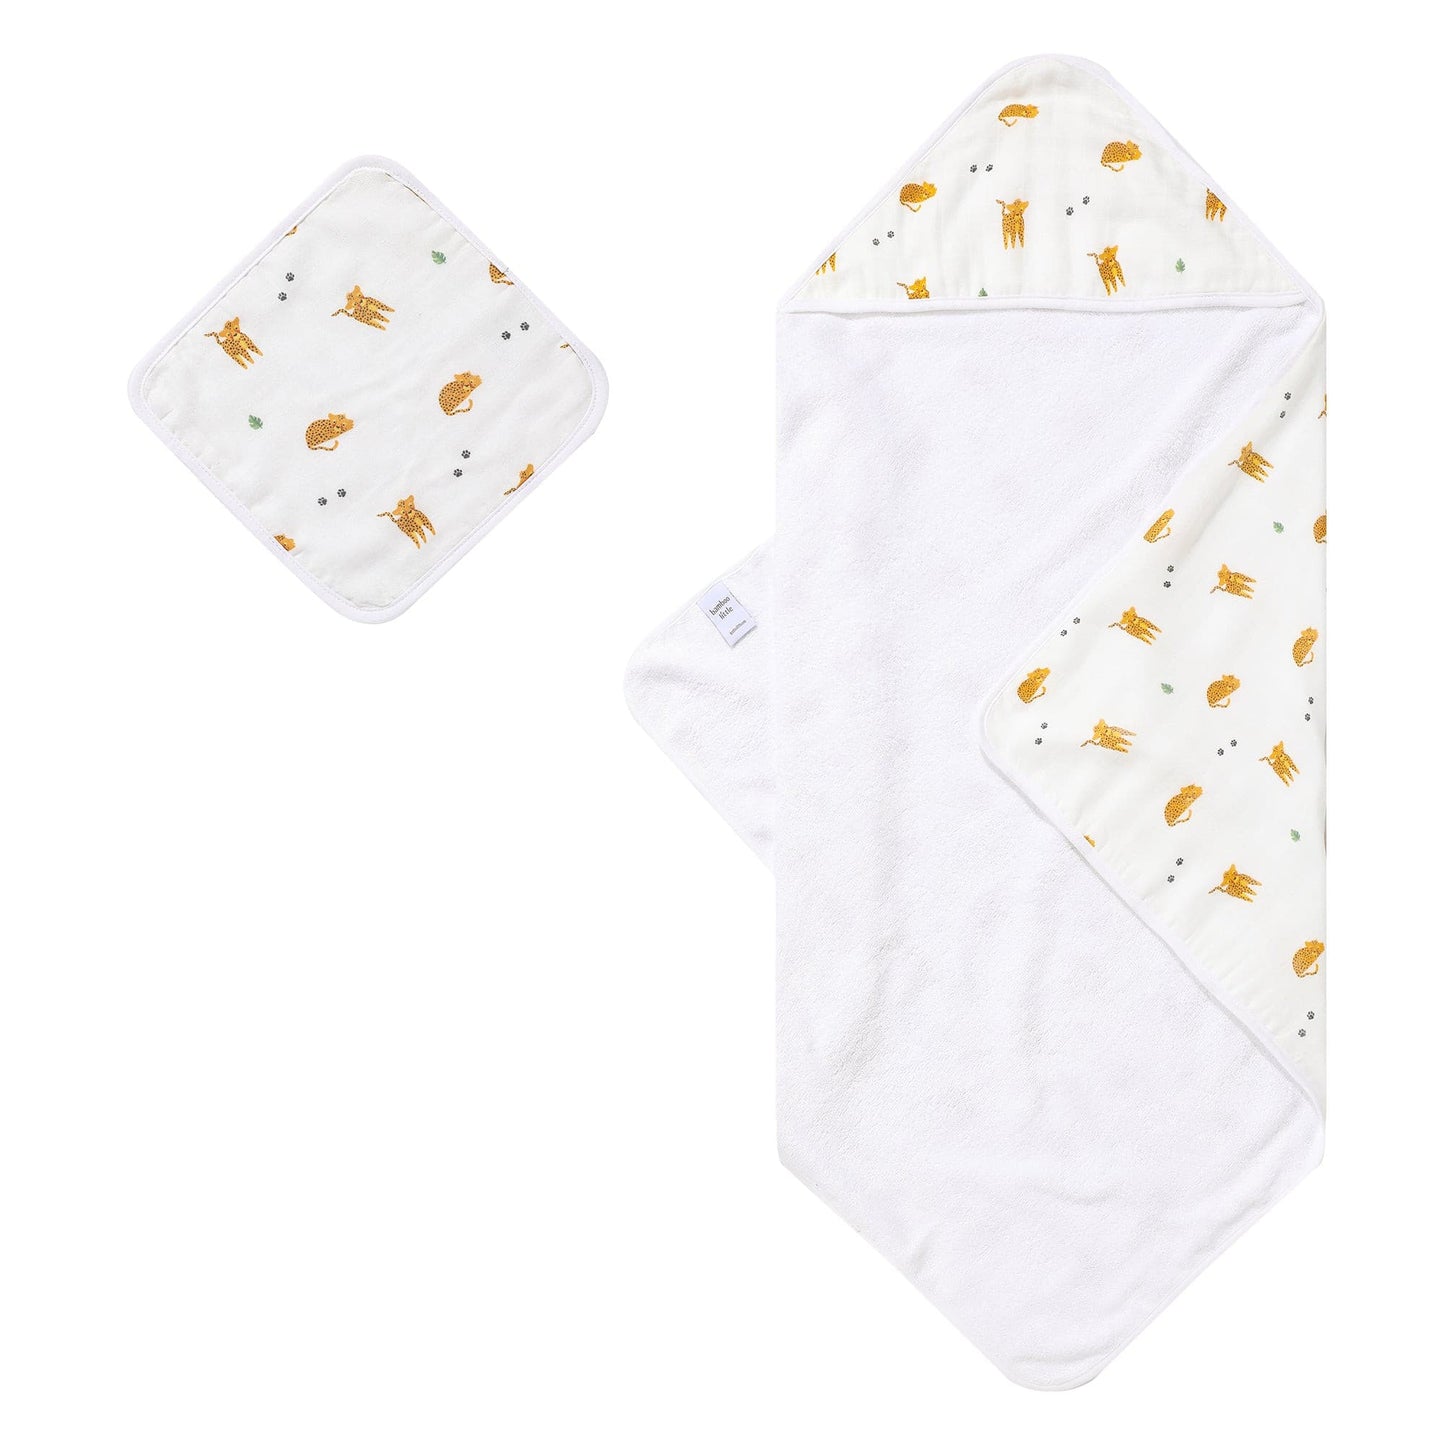 Cheetah Hooded Towel Set